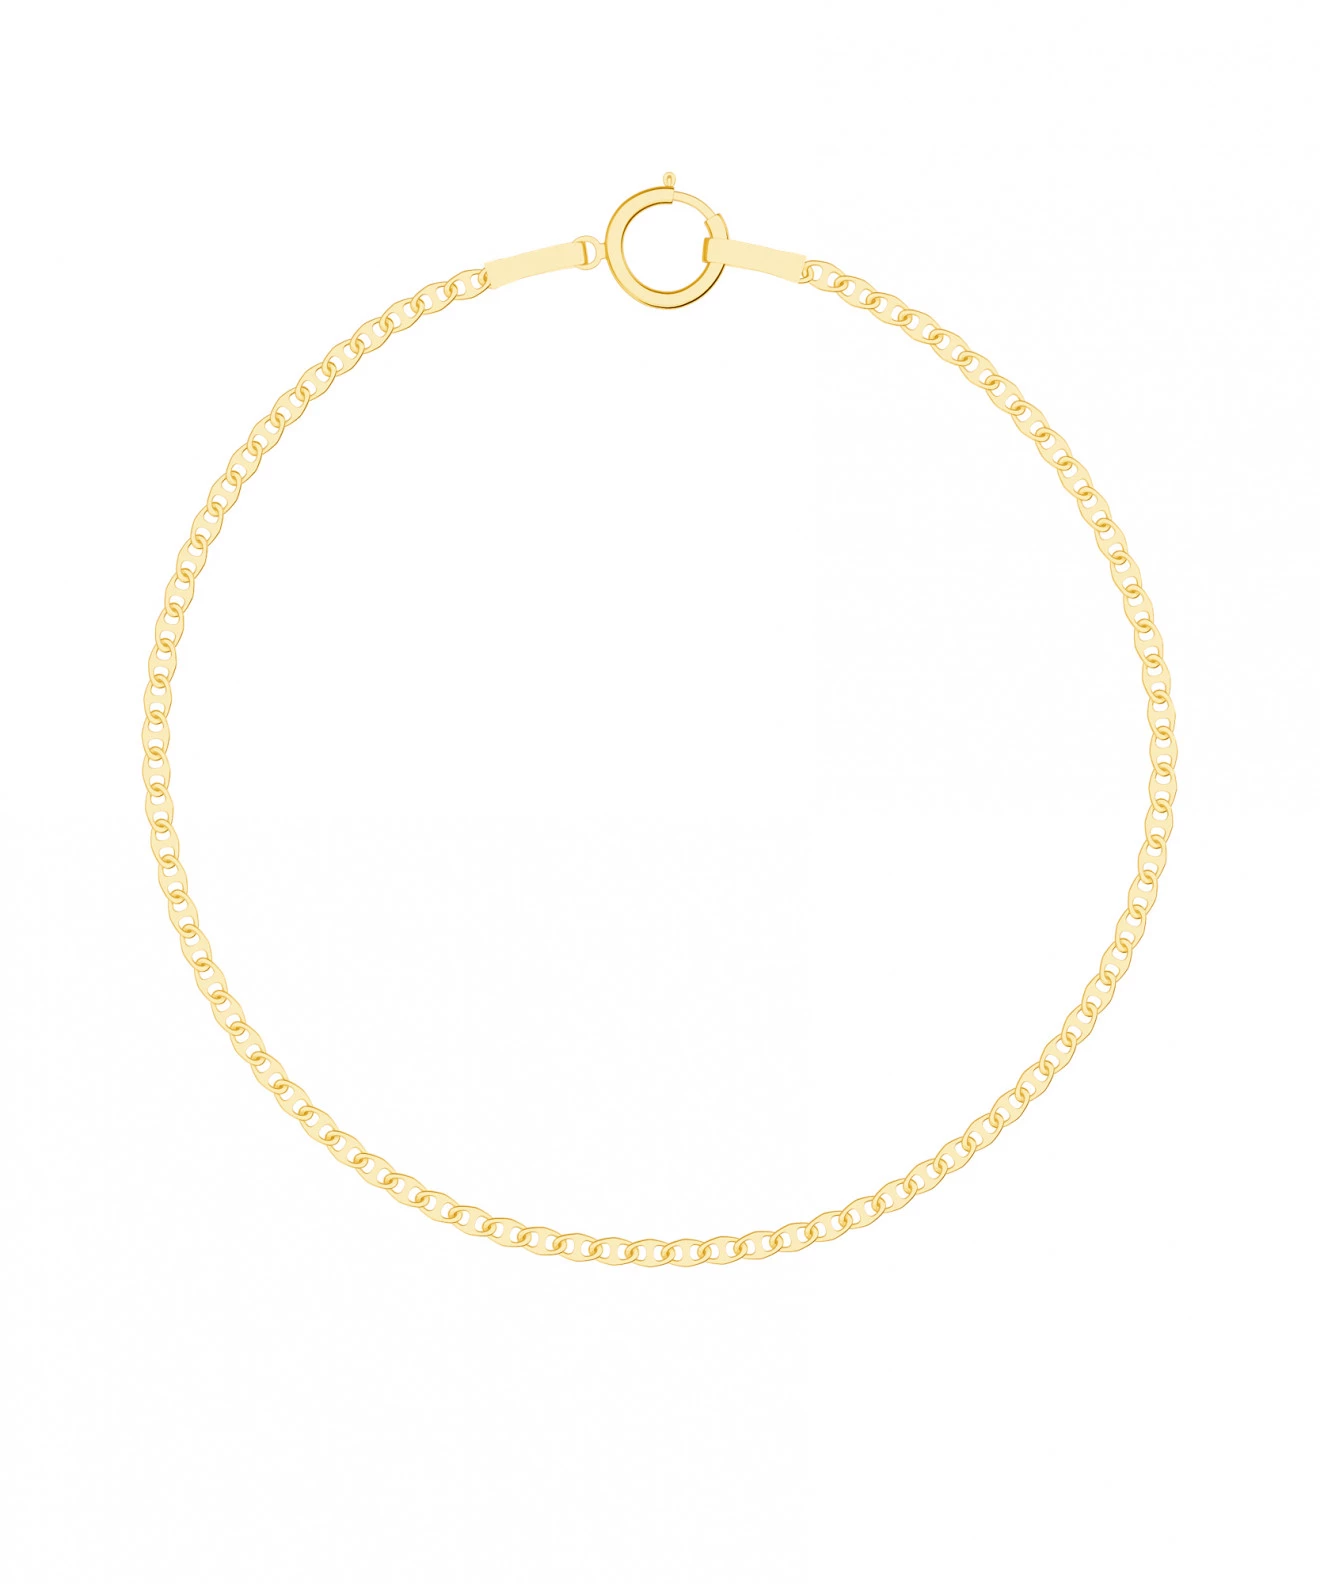 Bonore - Gold 585 bracelet 145922